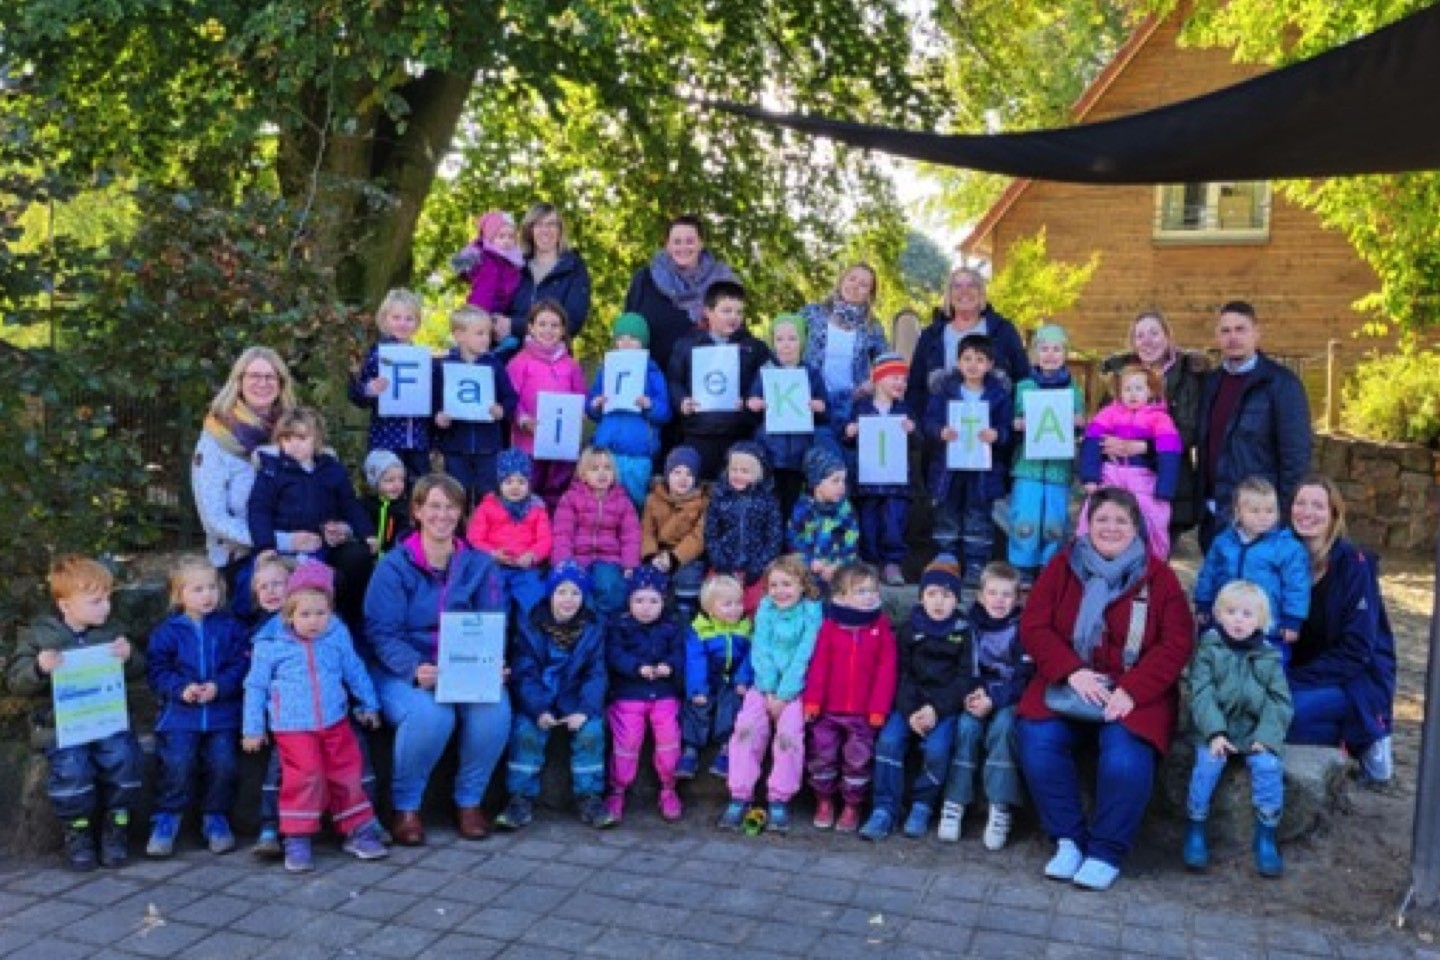 Ludgeri-Kindergarten,Warendorf,FaireKita,Kinder,Kindergarten,